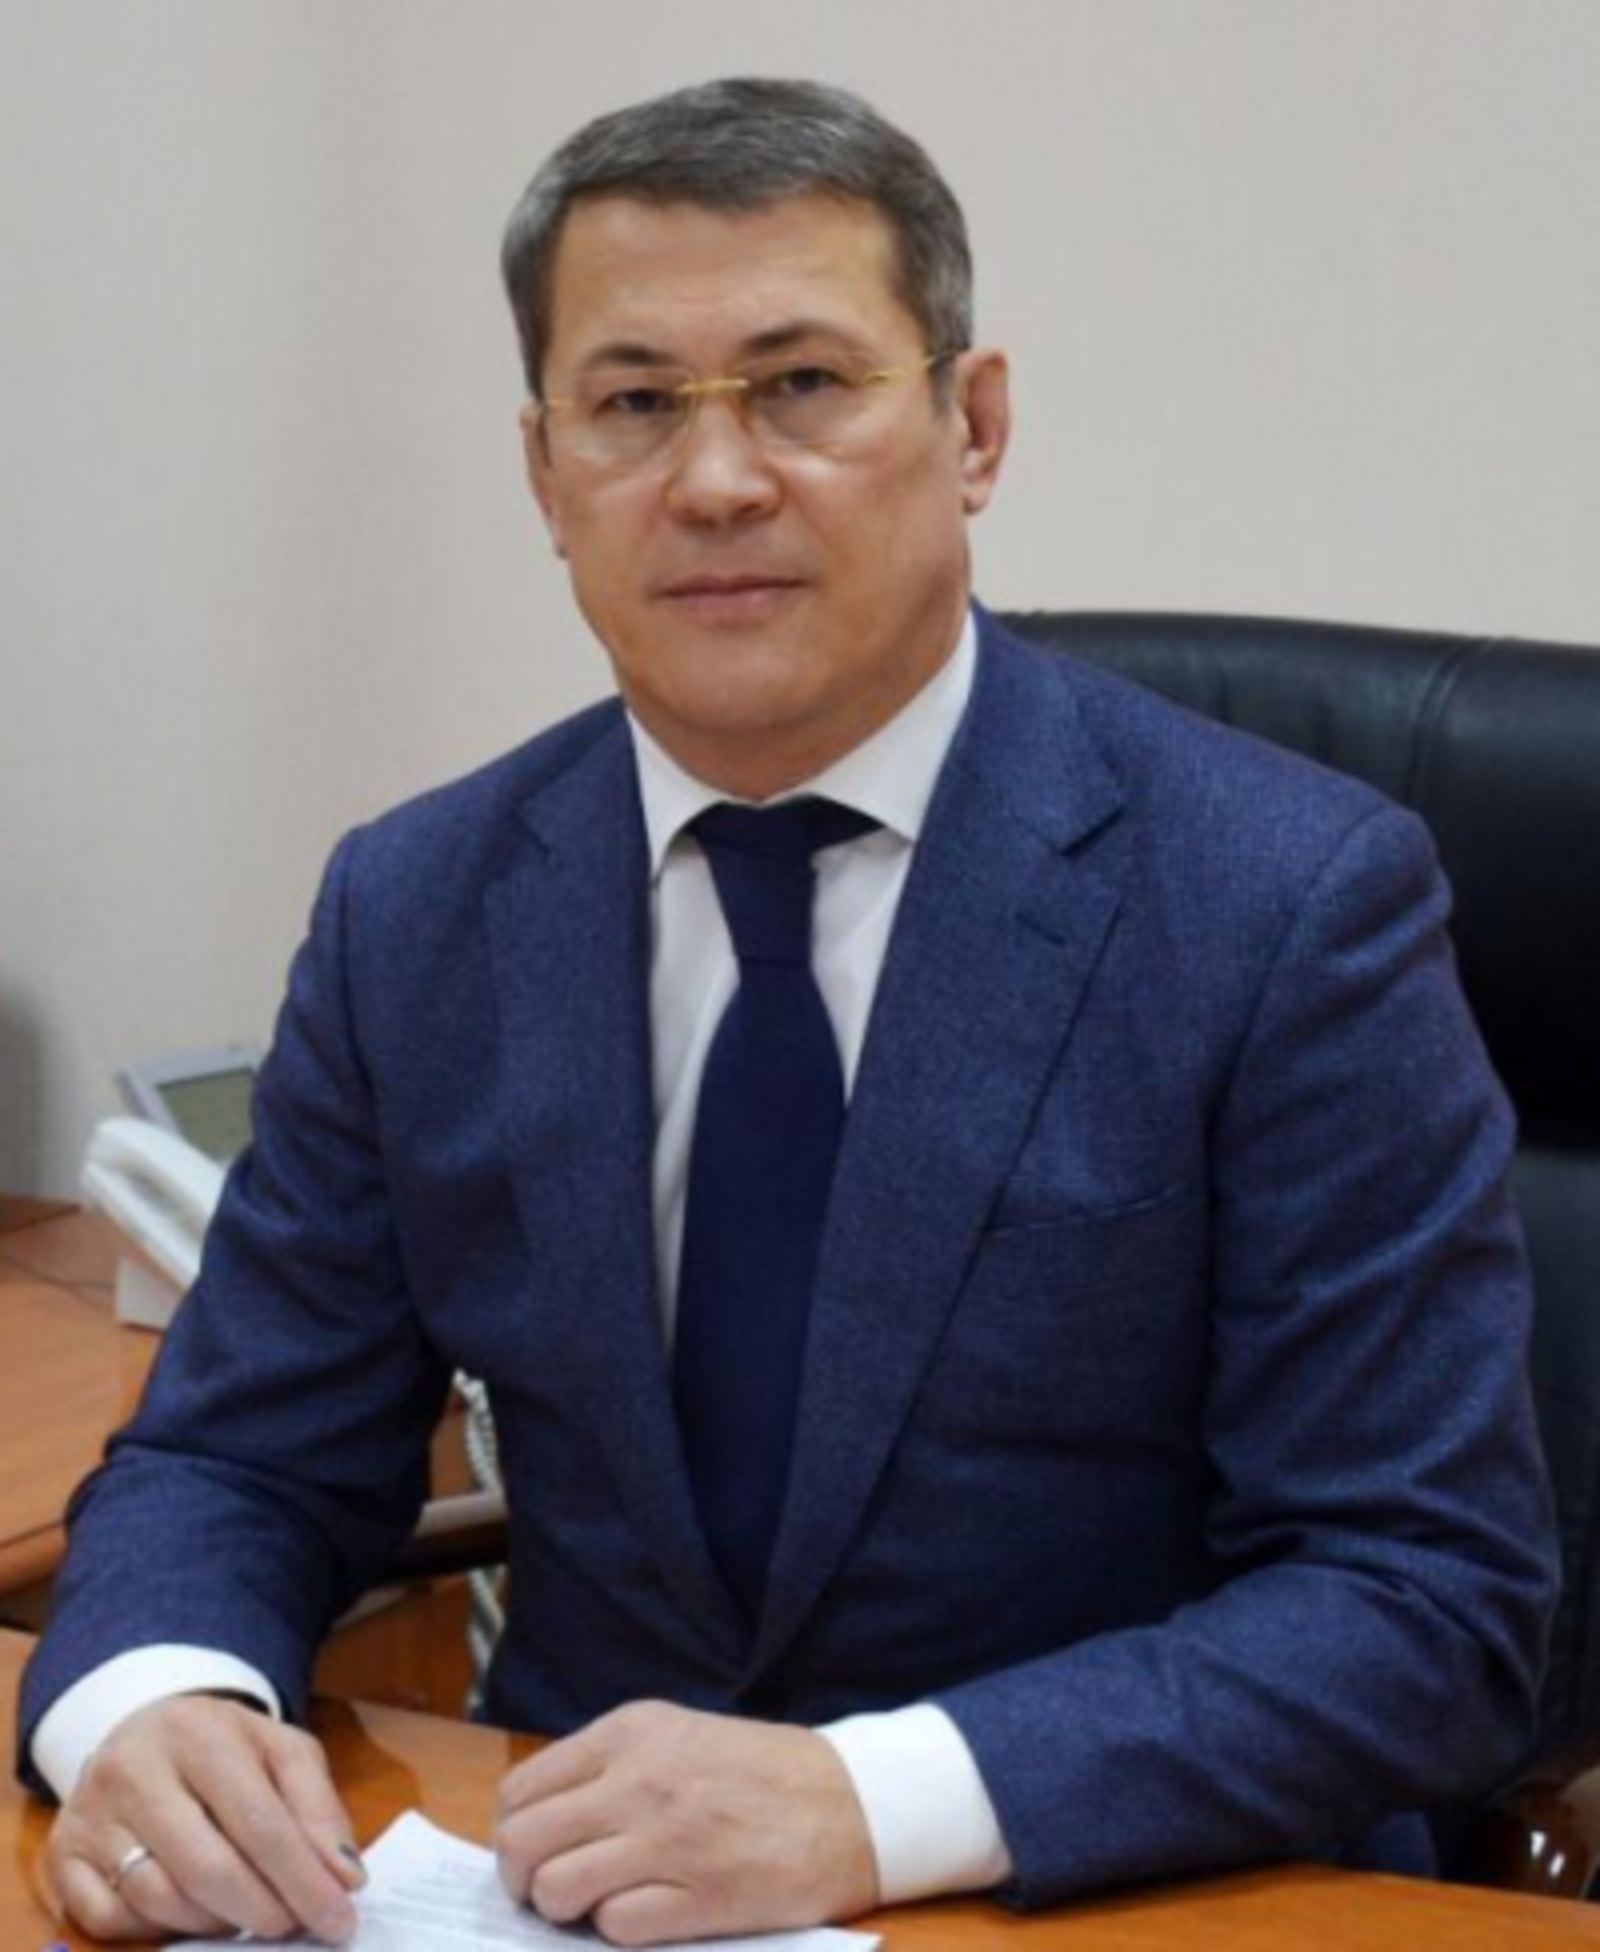 27 октября состоится «Прямая линия» с Главой Башкортостана